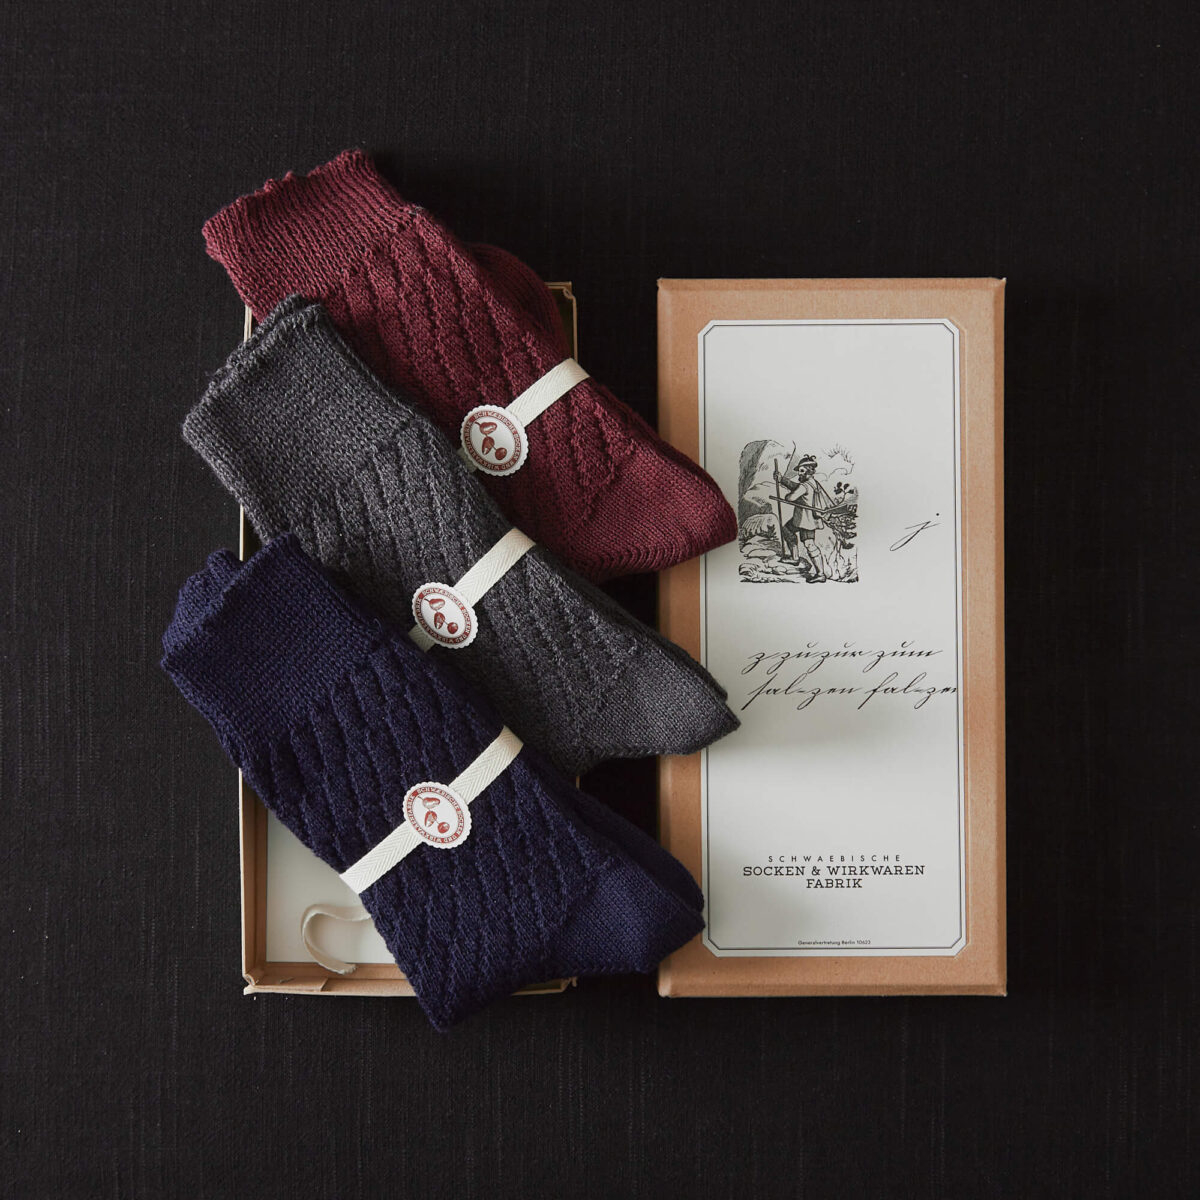 Zopfmuster-Socken im 3er Set von Frank Leder im Hausgemachtes Shop erhältlich in einer liebevoll gestalteten Papierverpackung mit handgeschriebenem Titel und feinen Linienzeichnungen. Die Socken sind in grau, navy und wein.